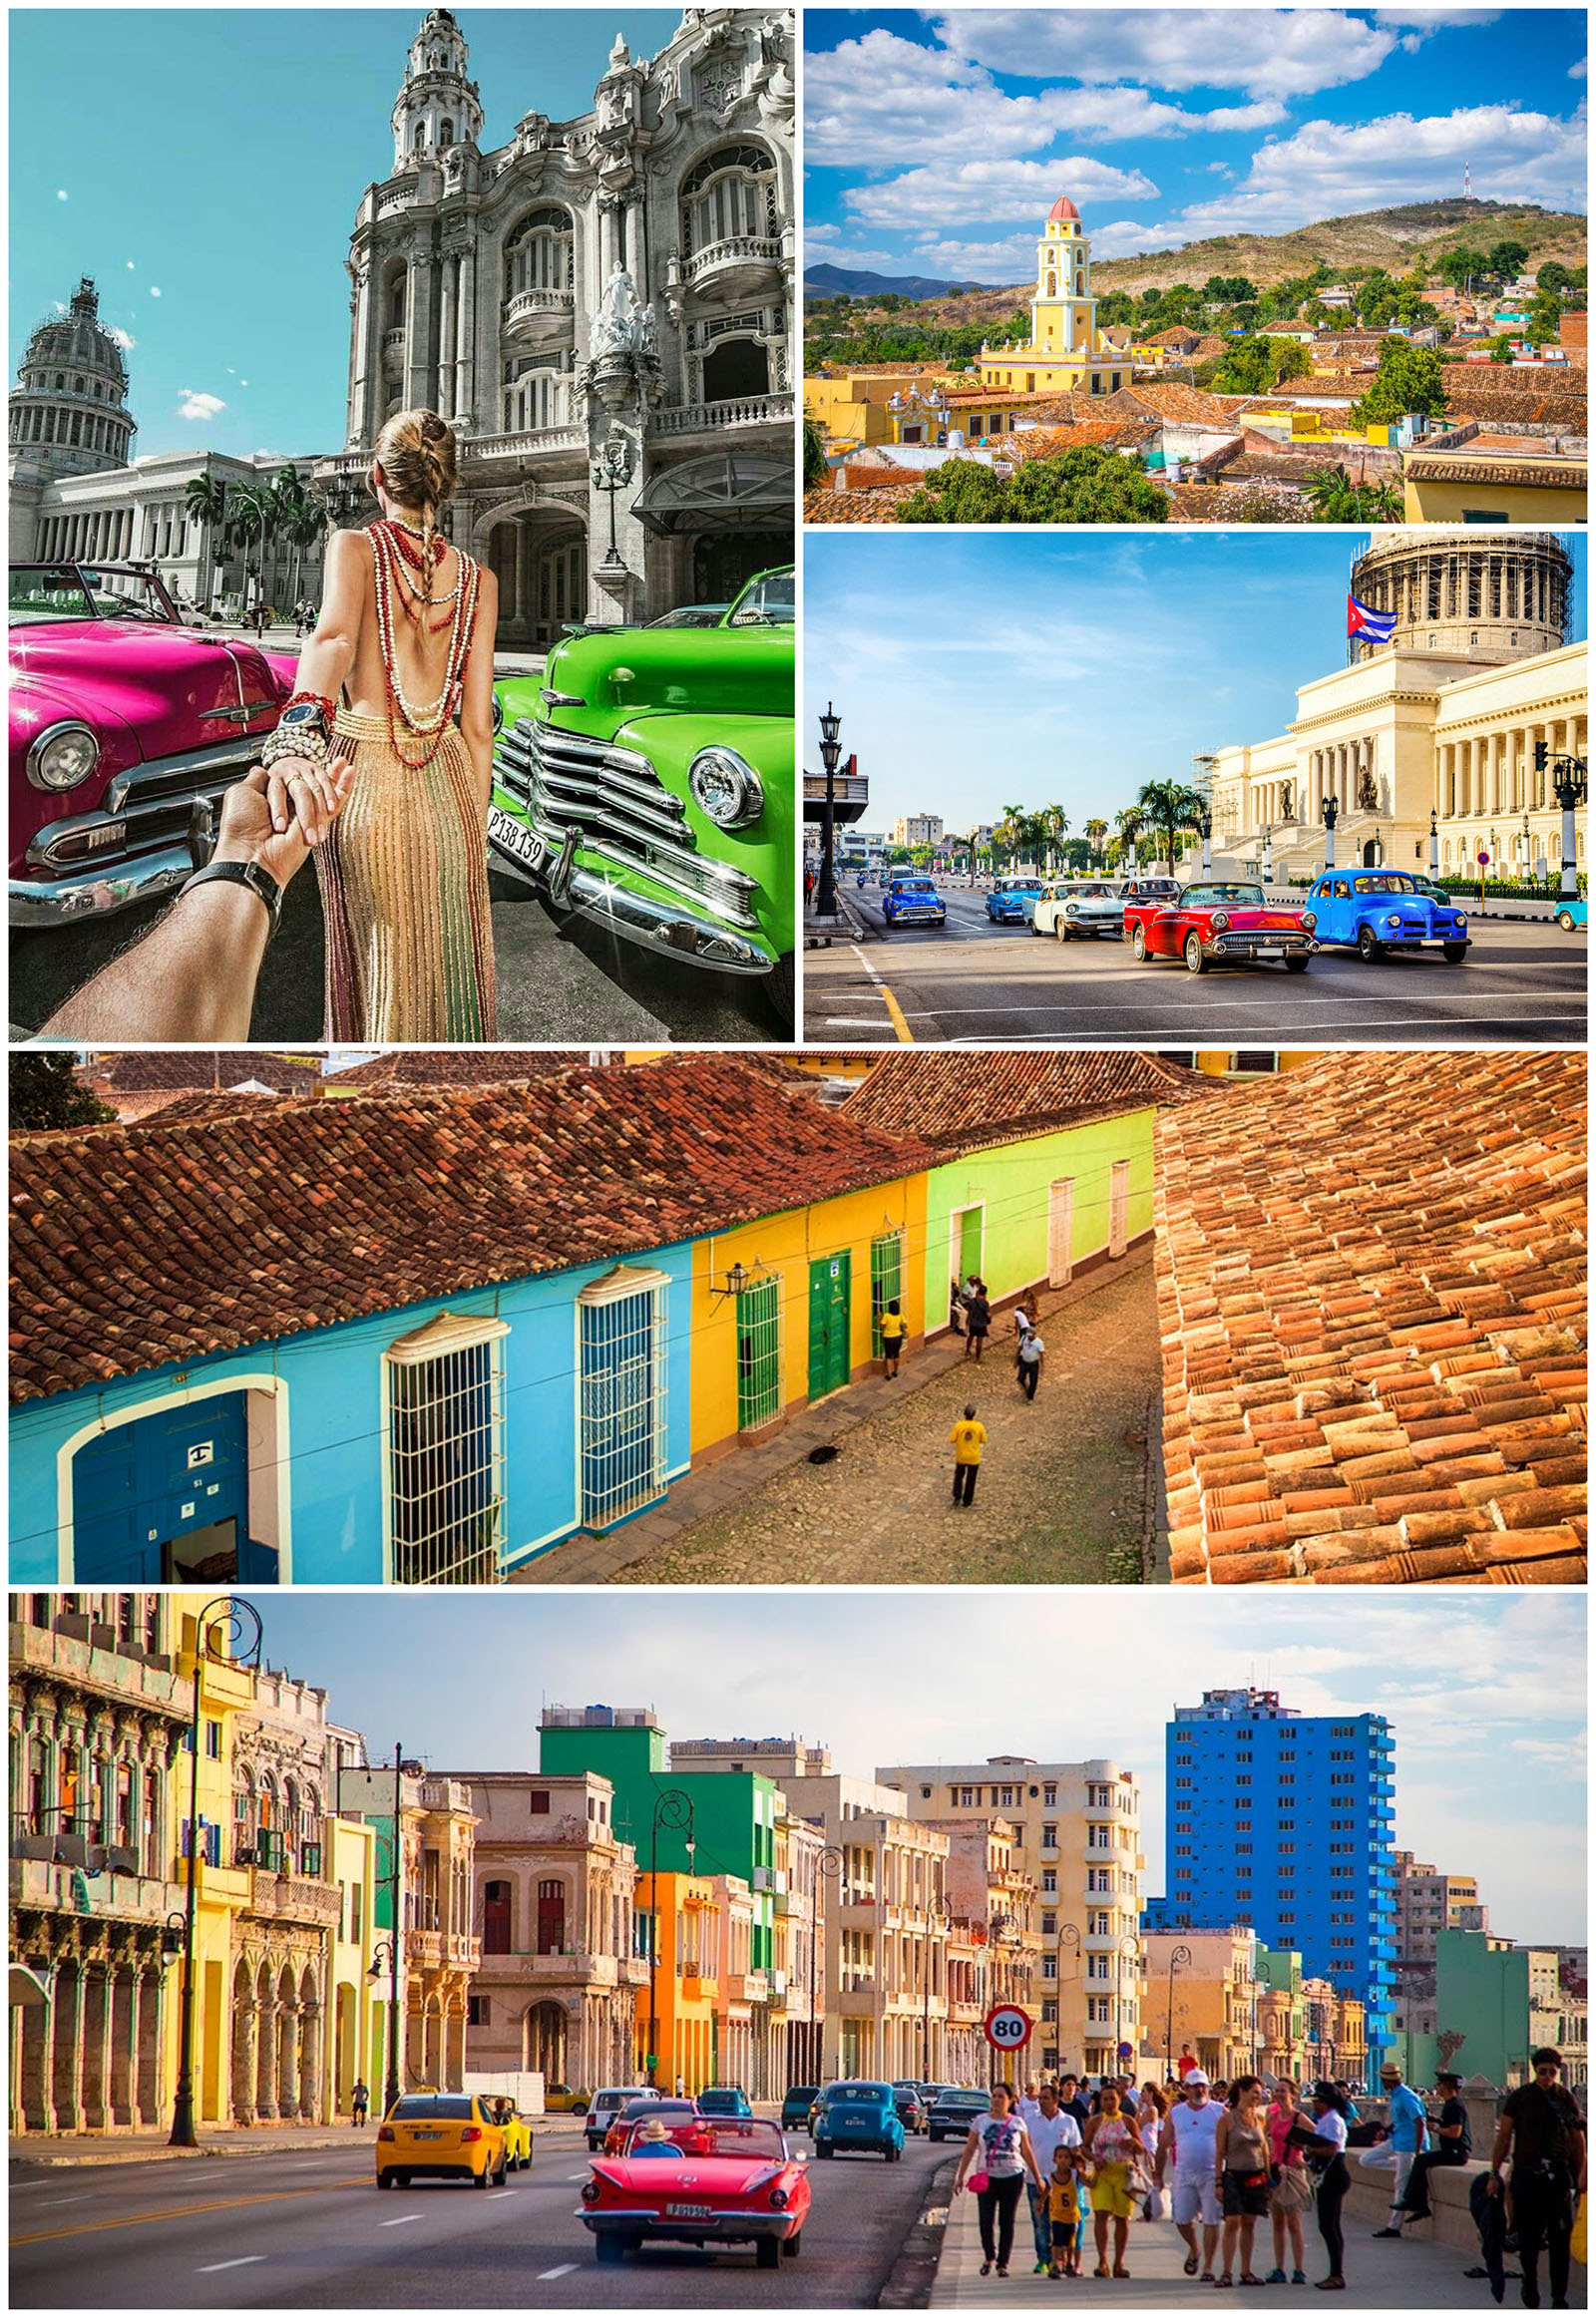 Du lịch Cuba tự túc - Hướng dẫn xin visa du lịch Cuba